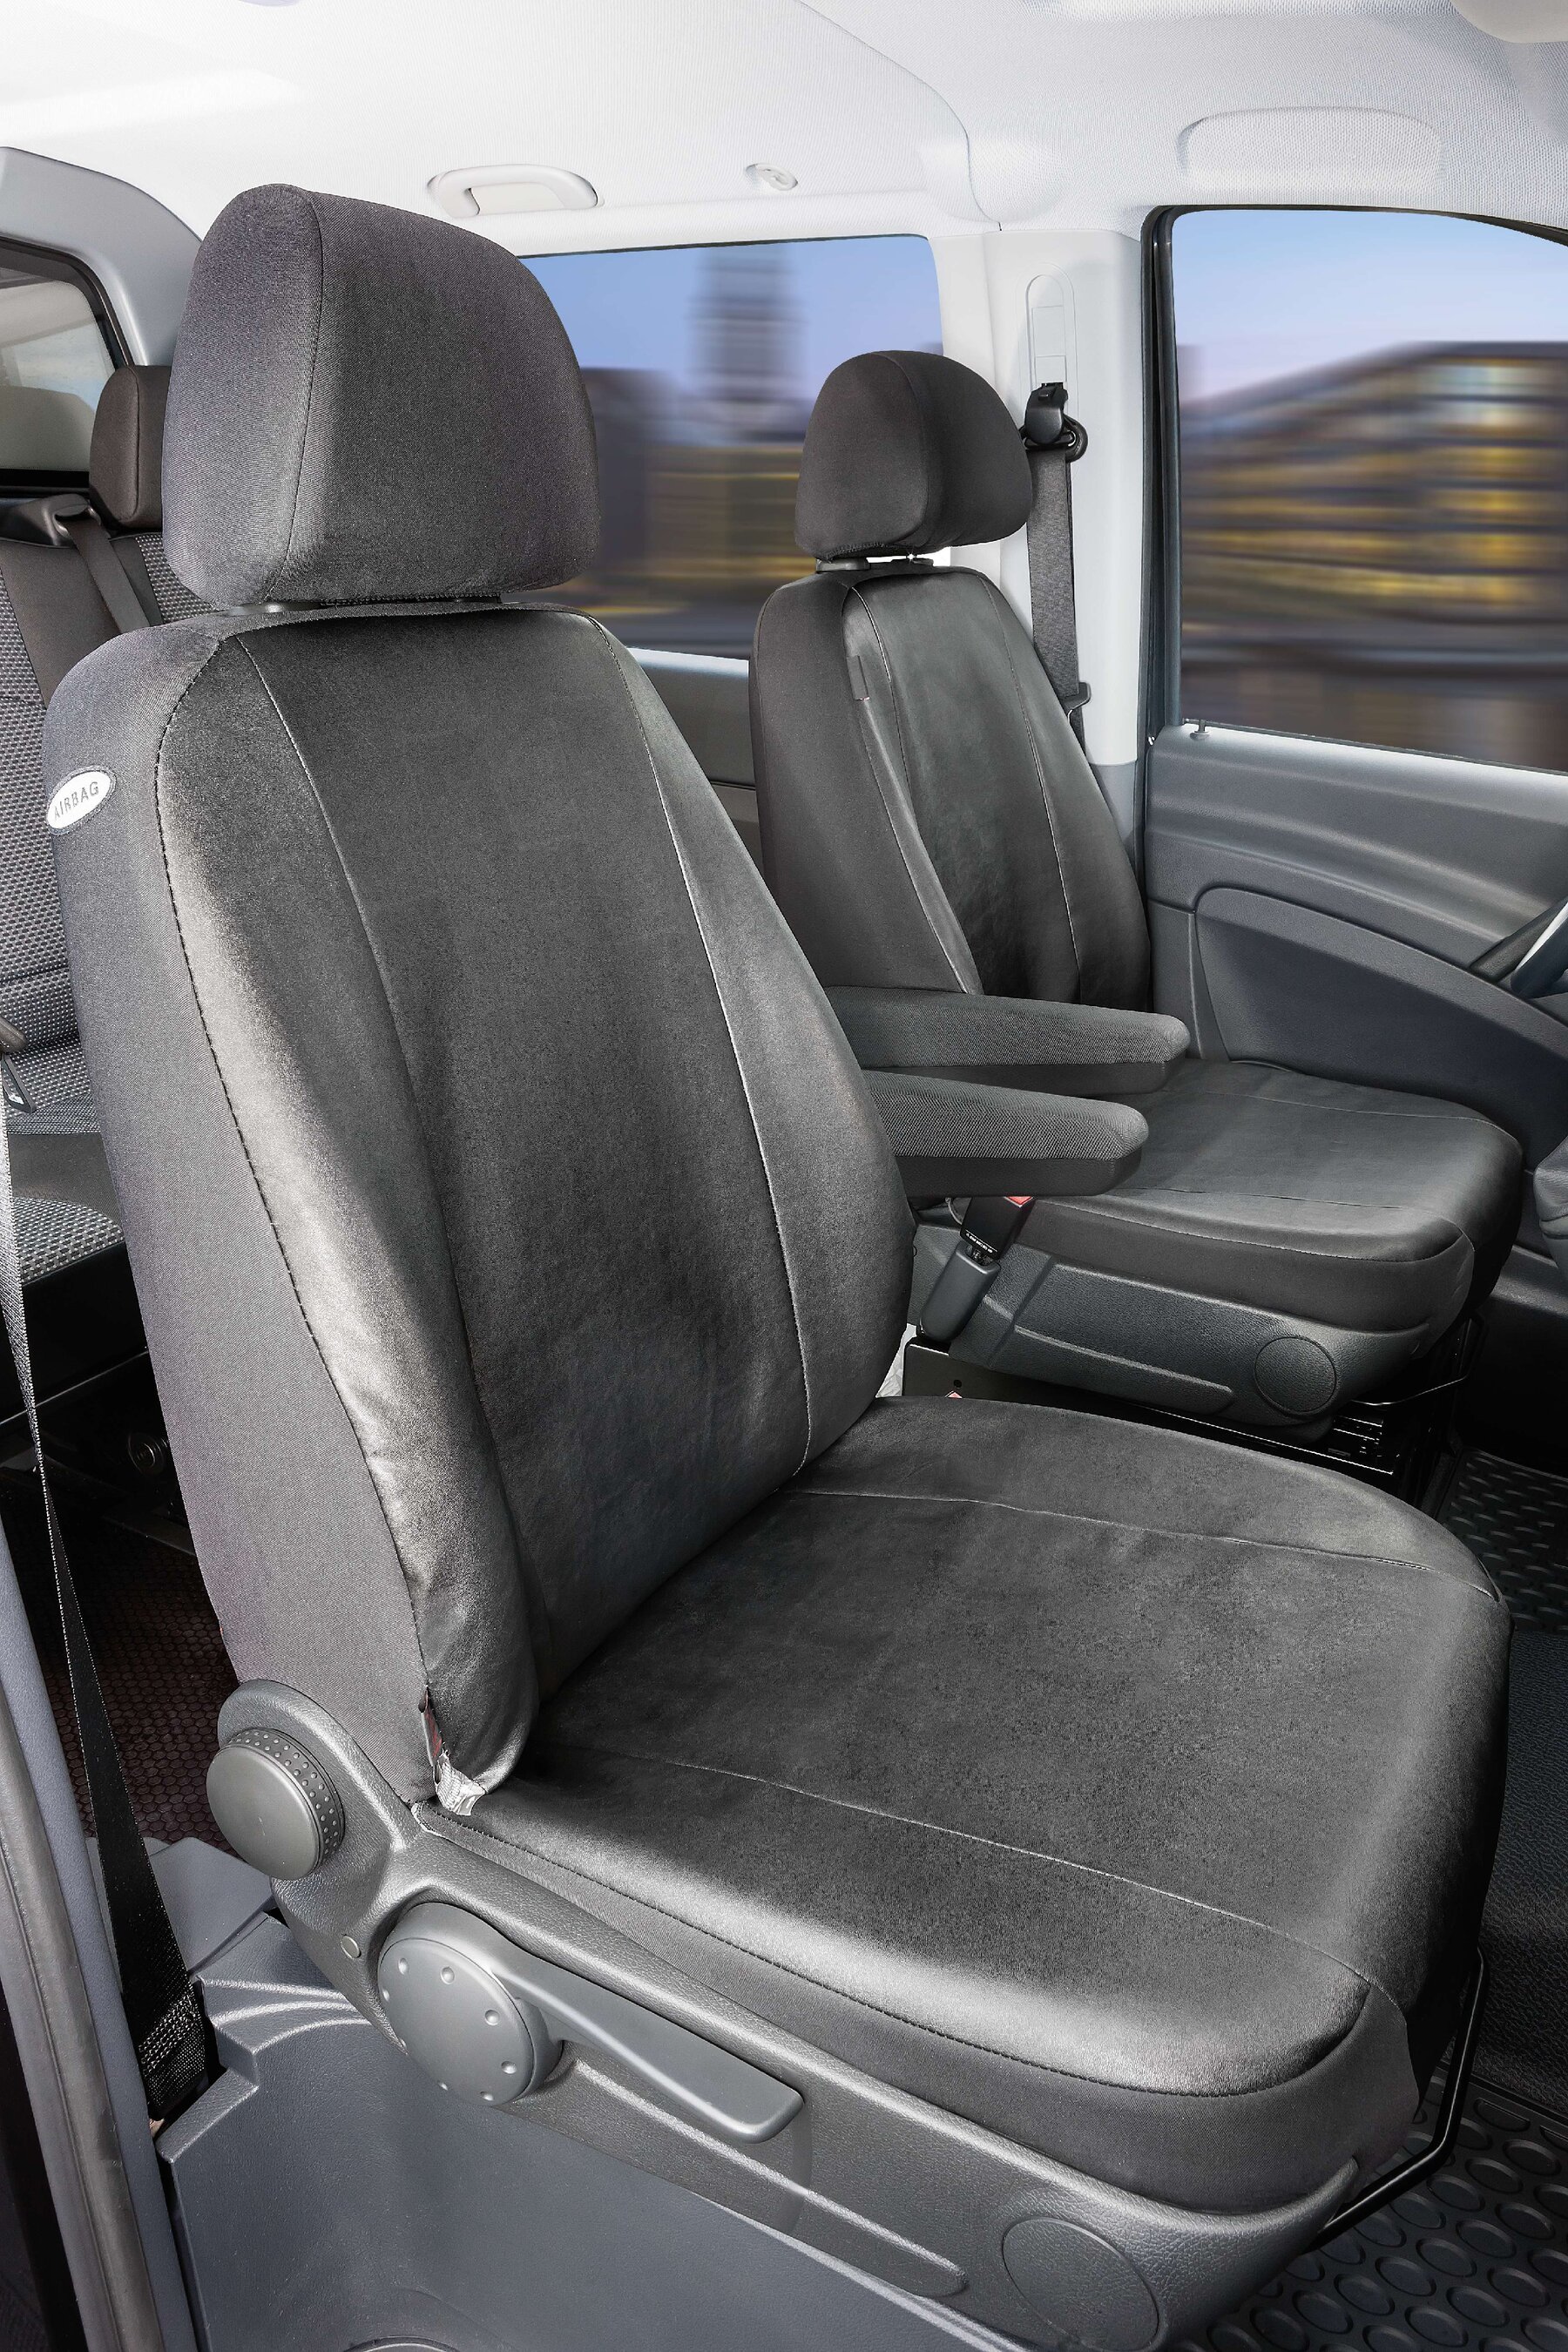 Housse de siège Transporter en simili cuir pour Mercedes-Benz Viano/Vito, 2 sièges simples accoudoir intérieur